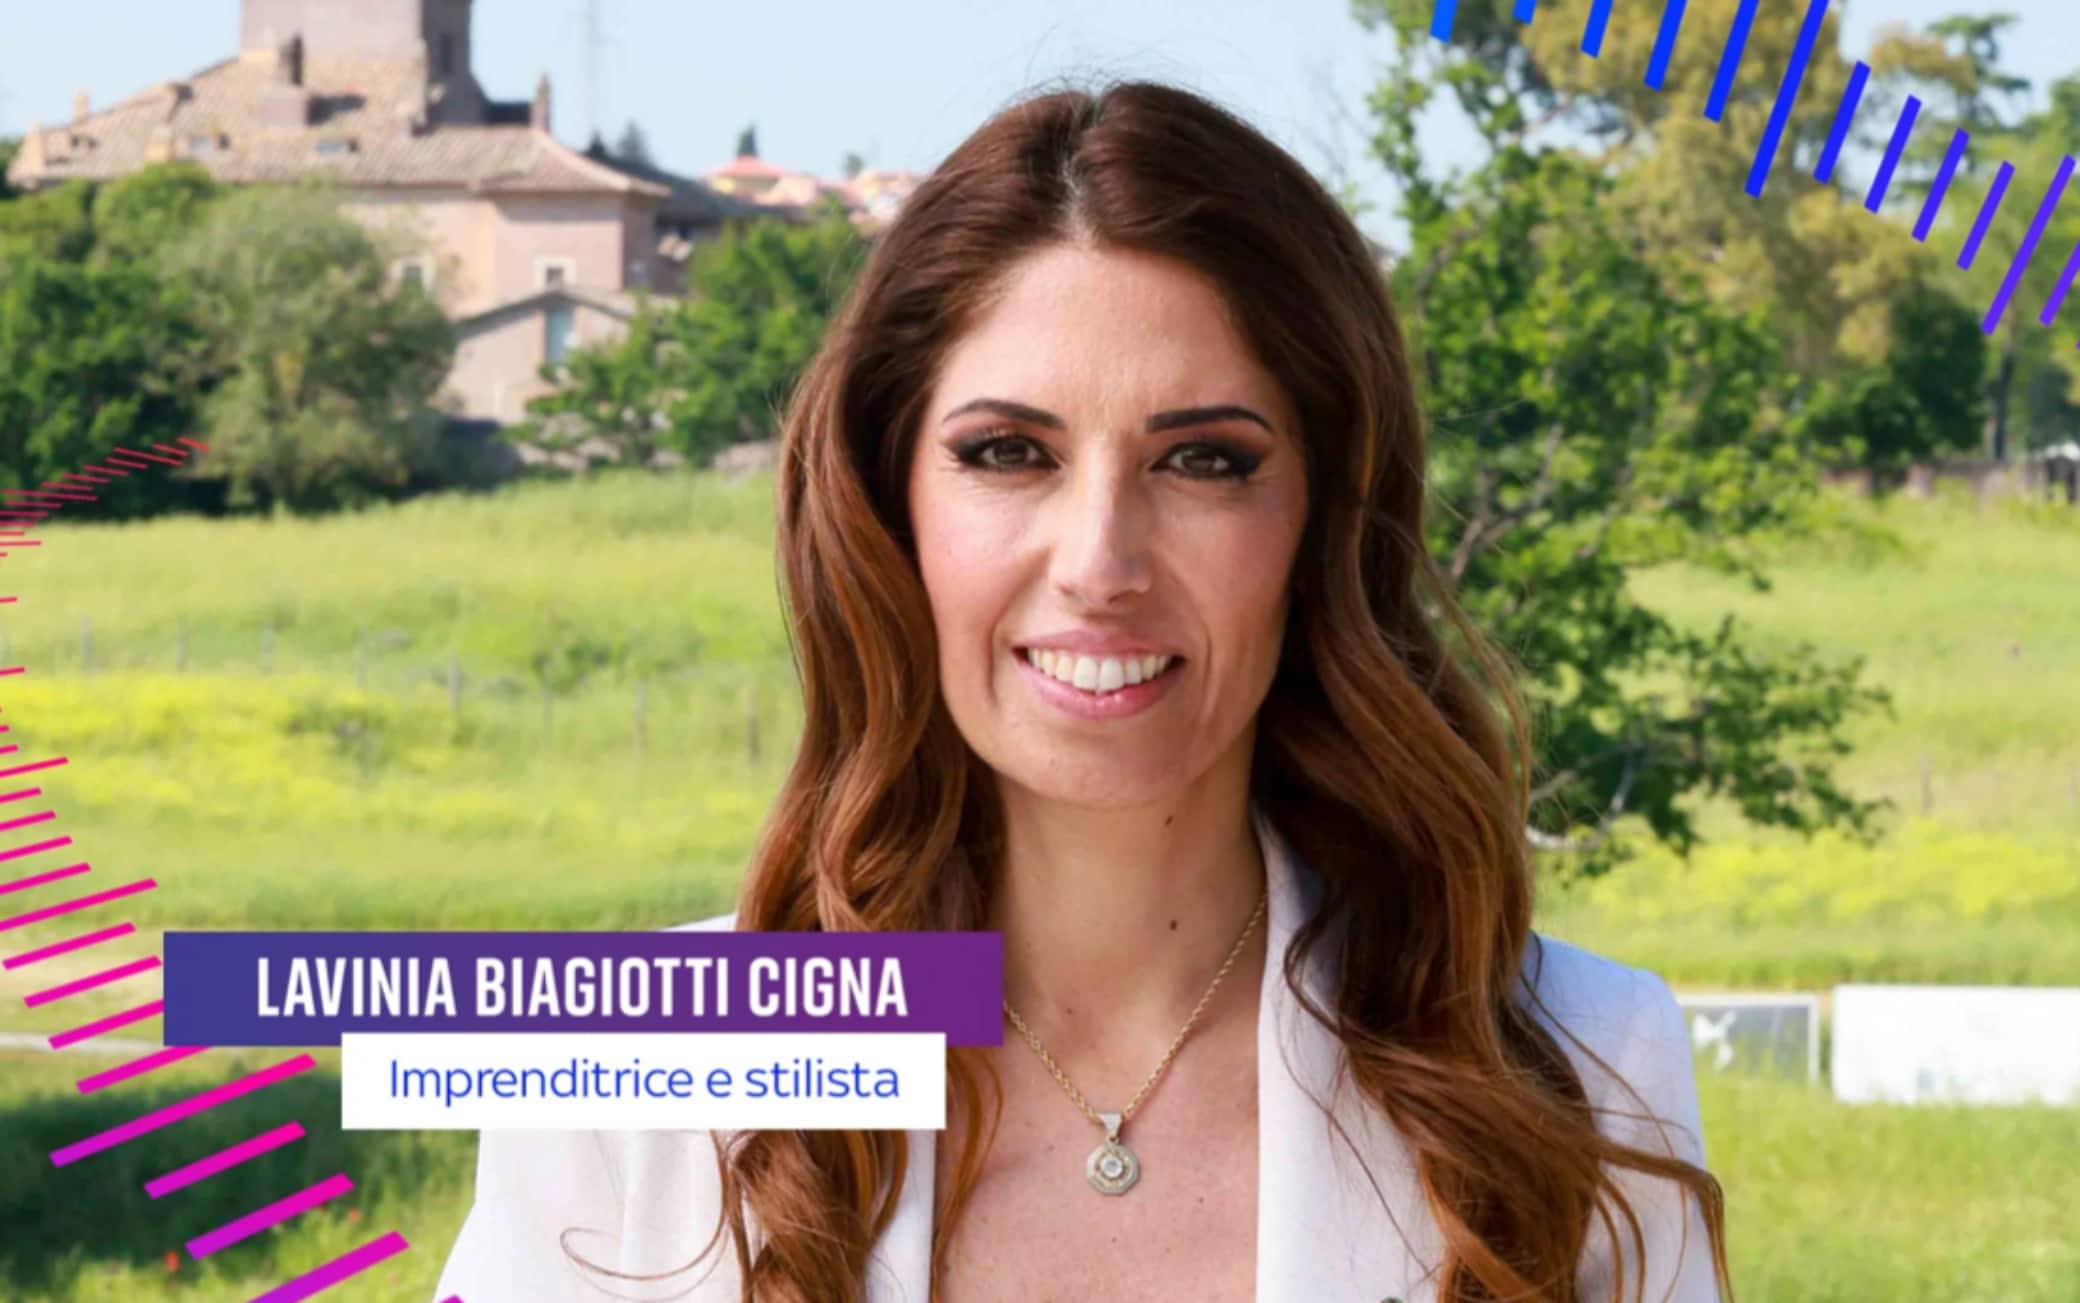 Lavinia Biagiotti Cigna